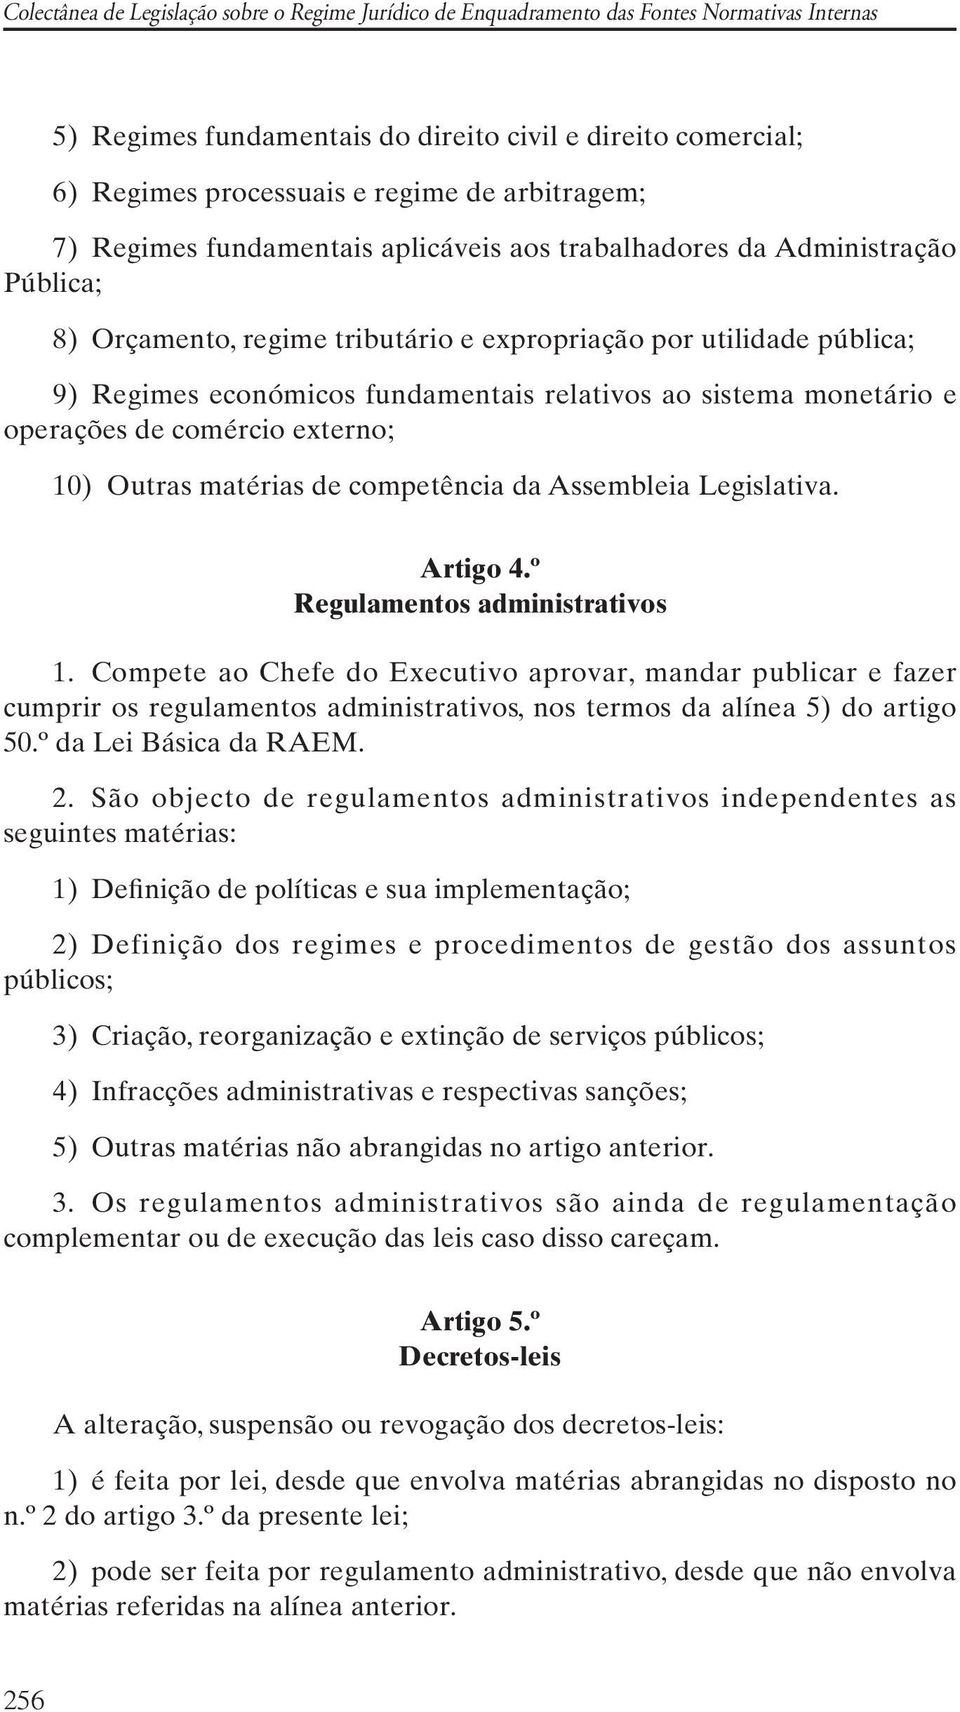 competência da Assembleia Legislativa. Artigo 4.º Regulamentos administrativos 1.